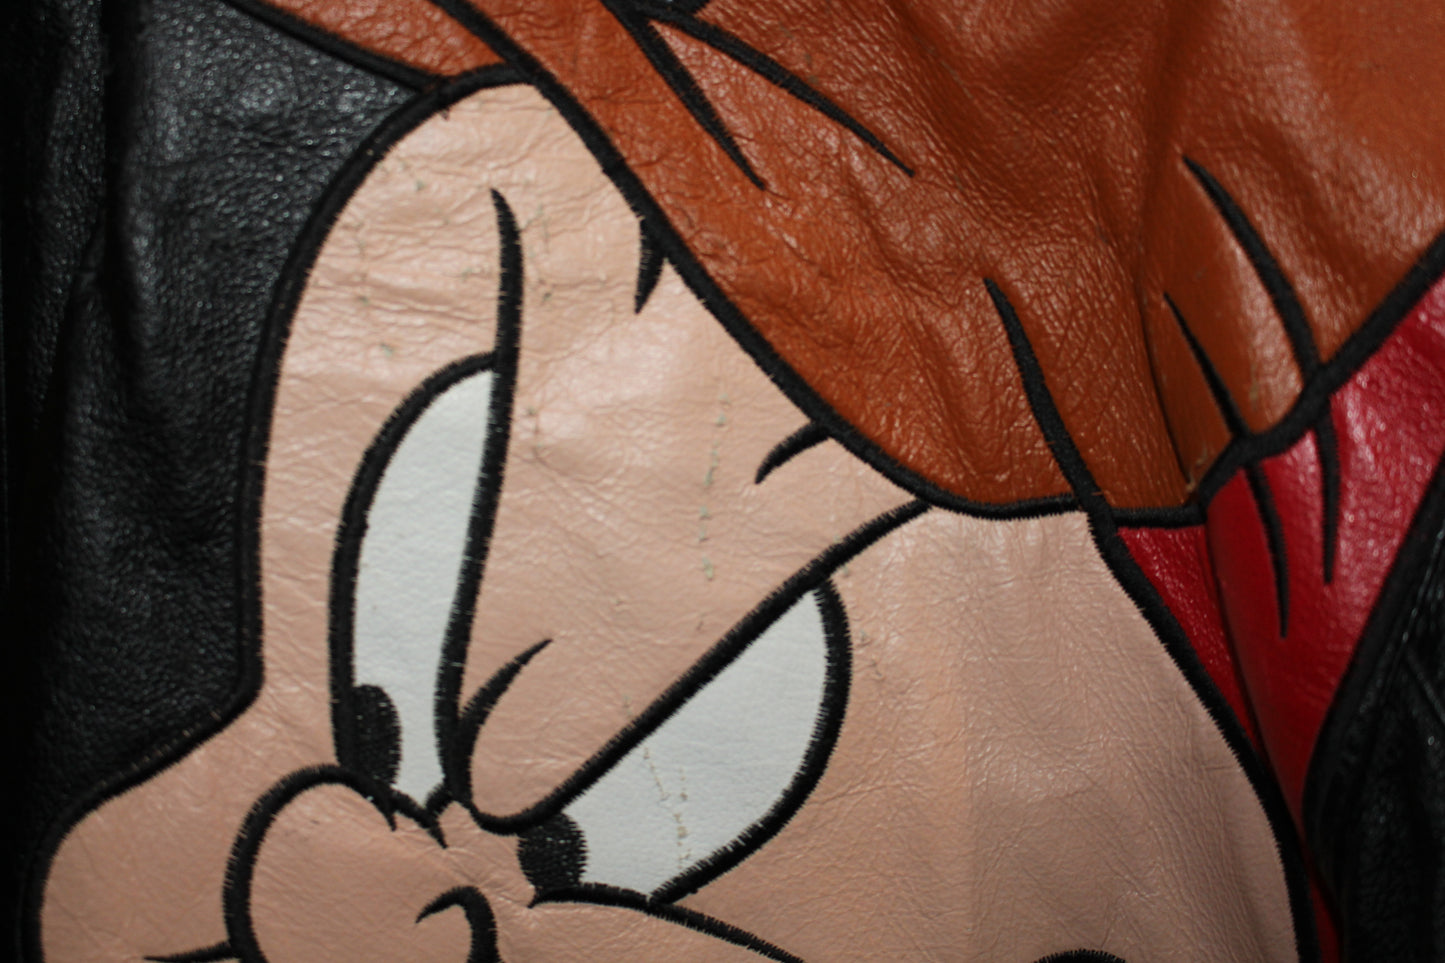 Rare Looney Tunes Space Jam Cartoon Warner Bros Leather Motorcycle Jacket (M)